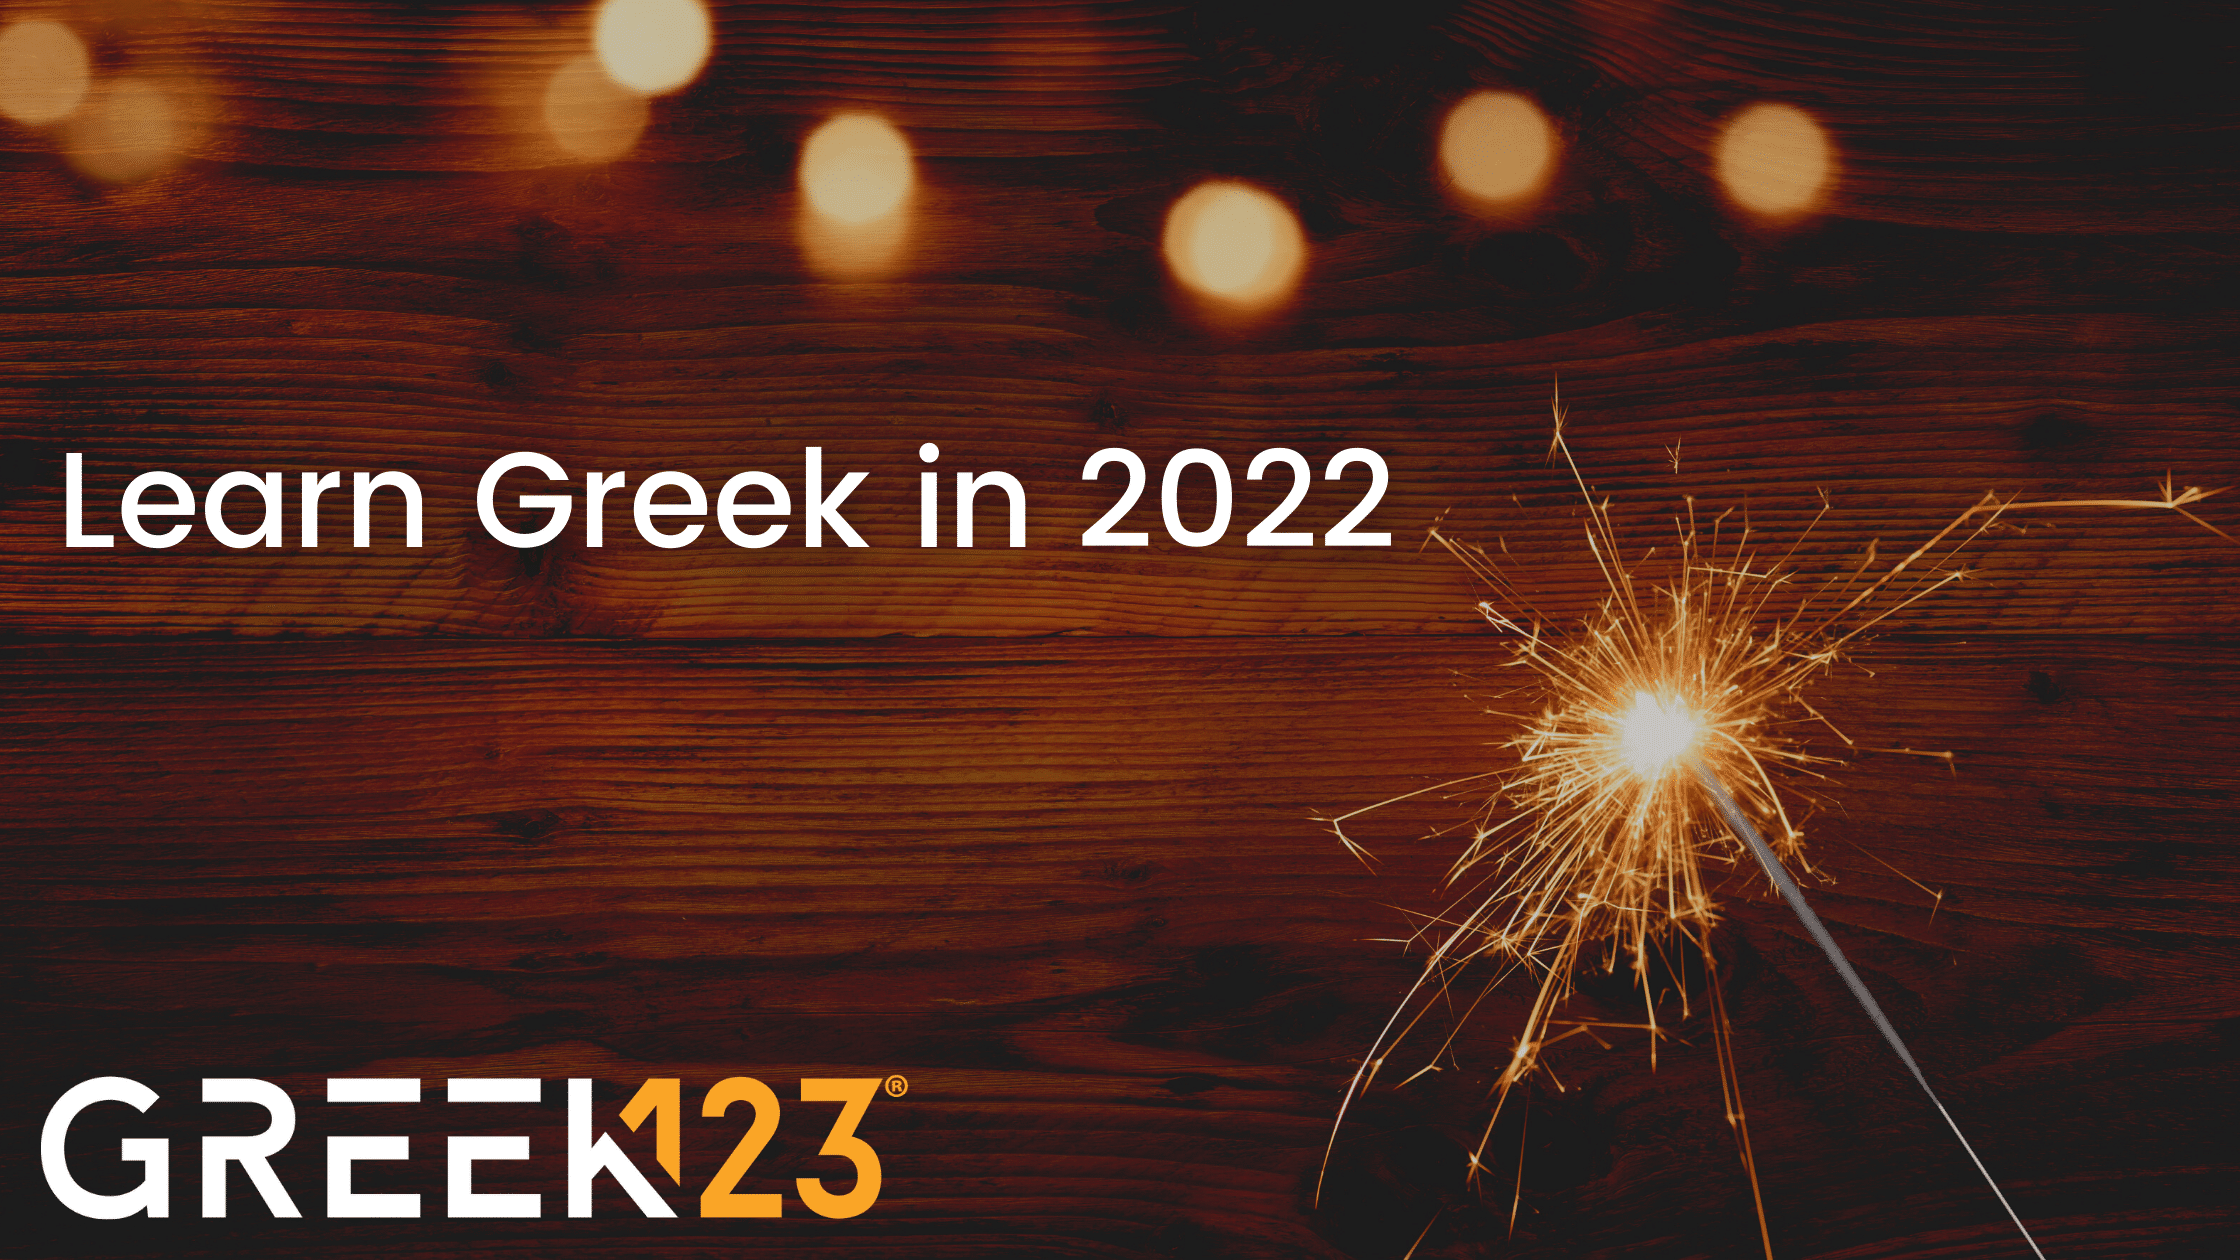 Learn Greek in 2022